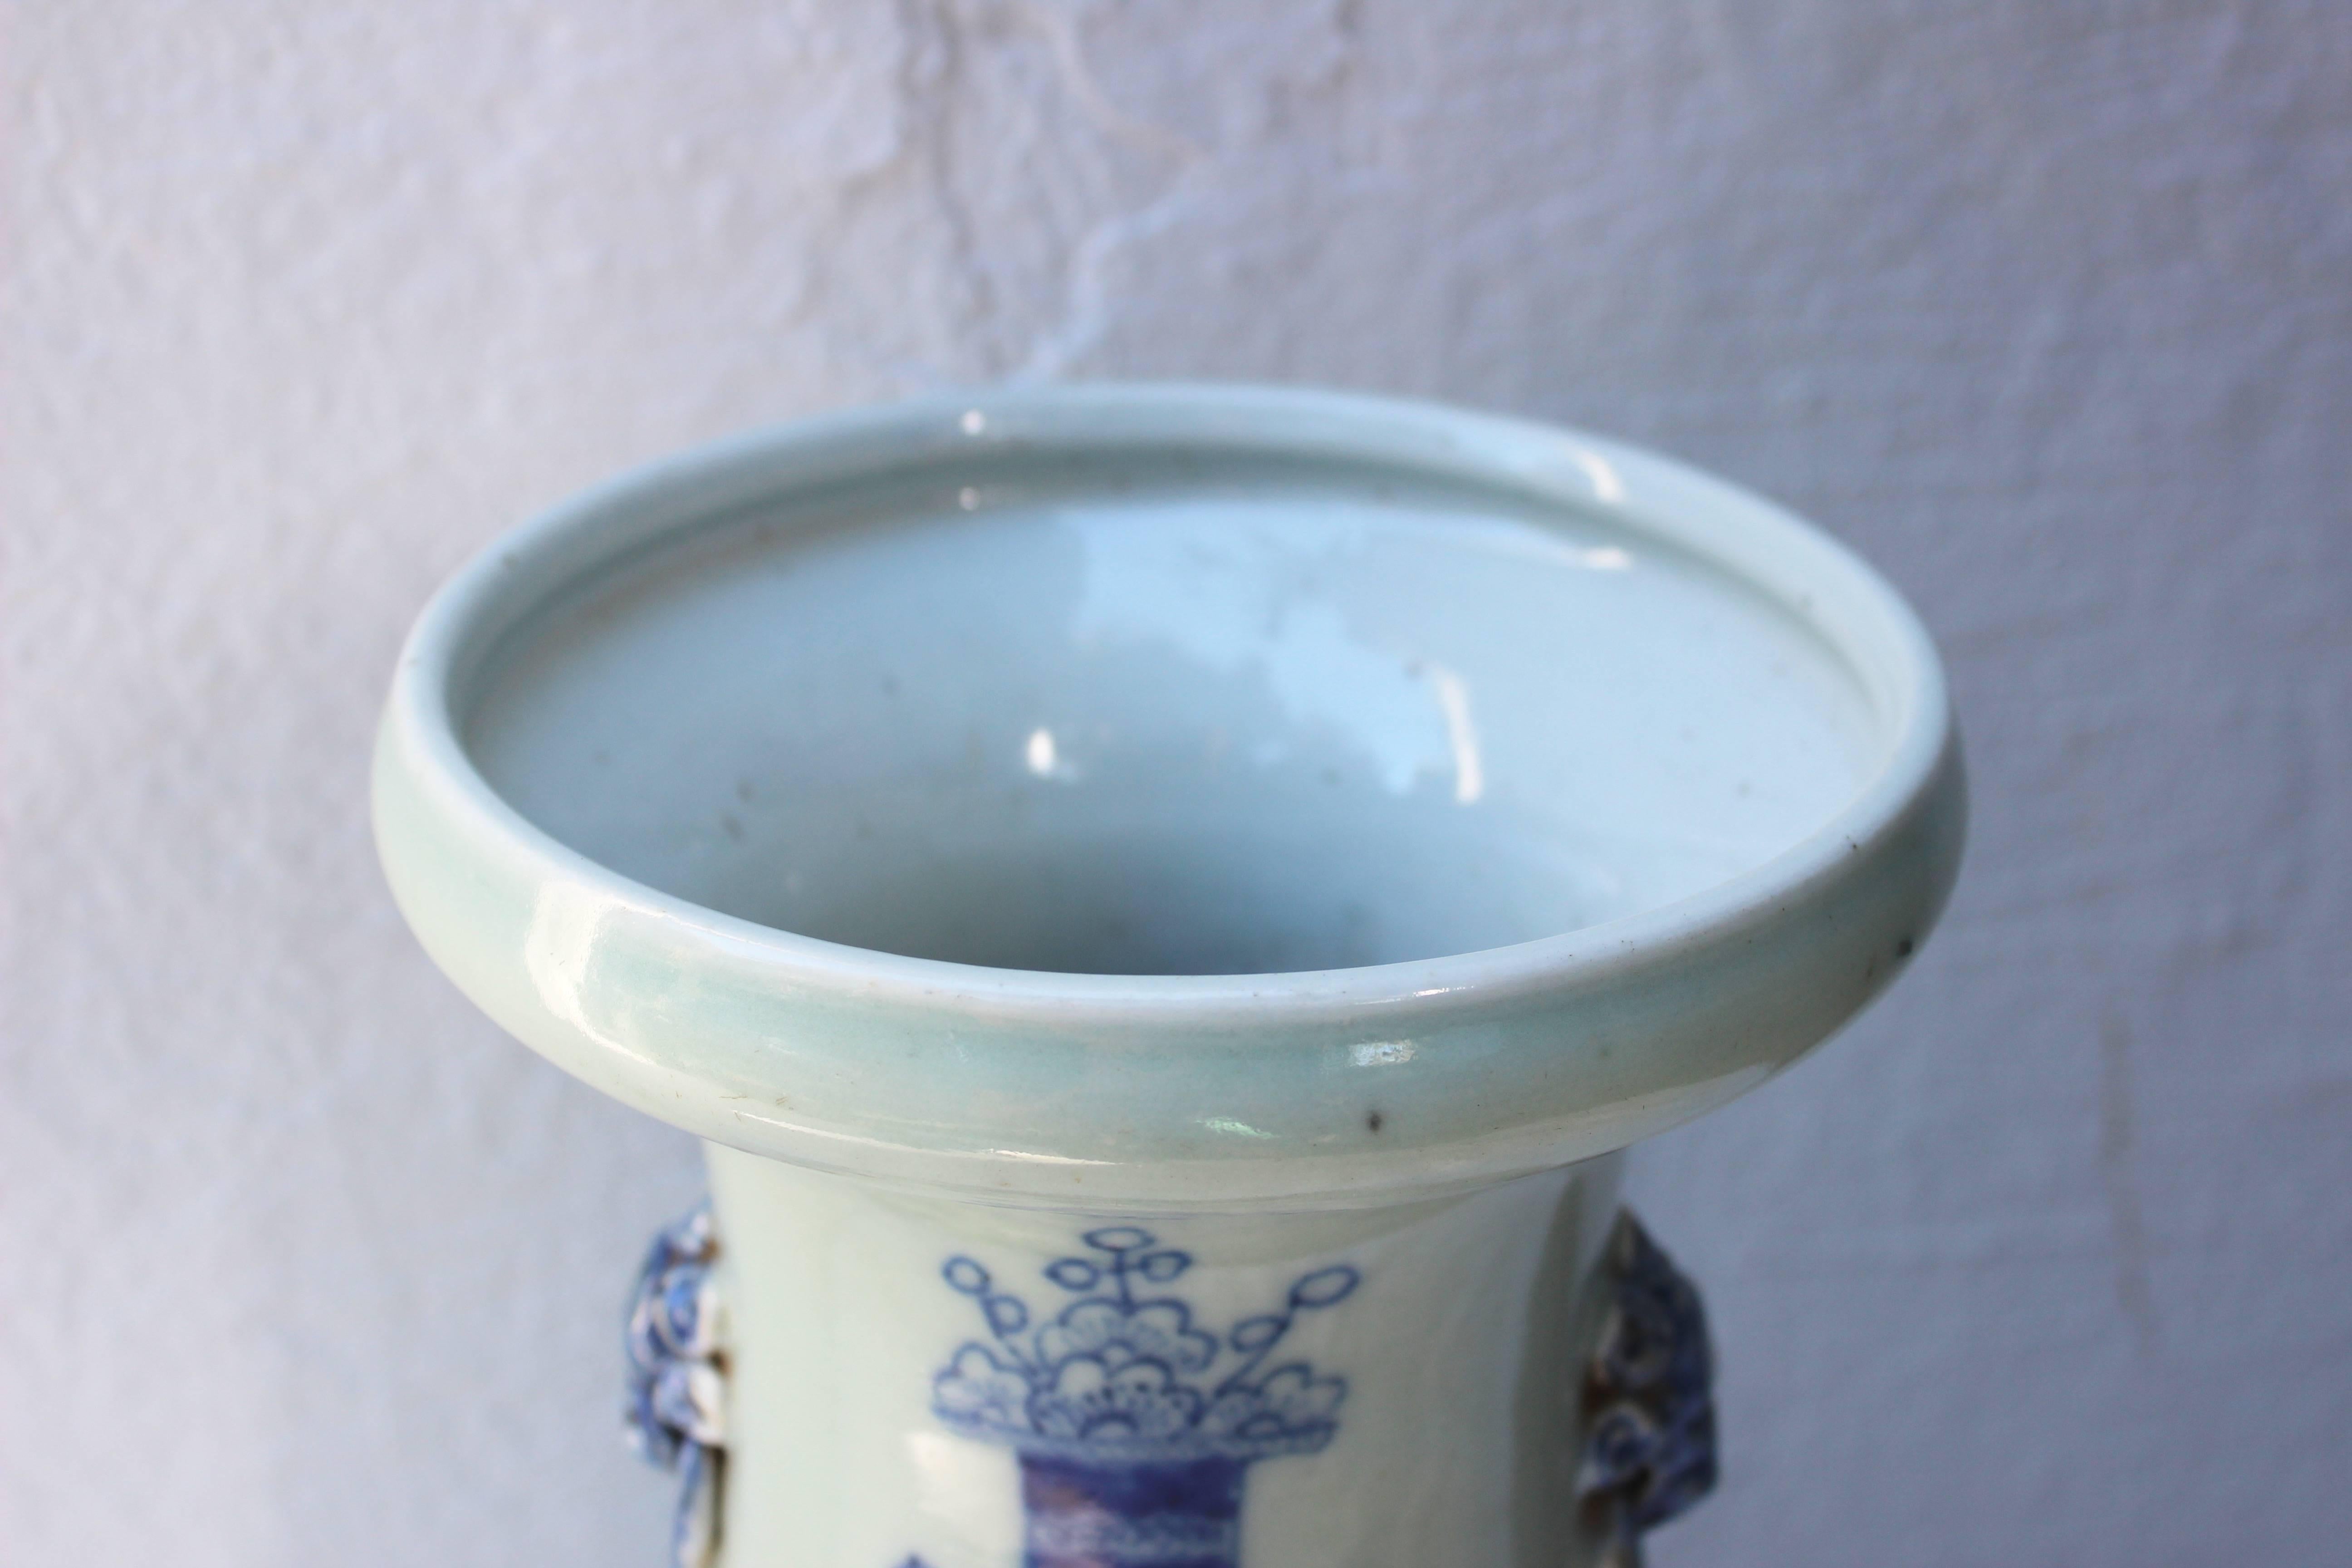 Chinese blue and white baluster shape vase.